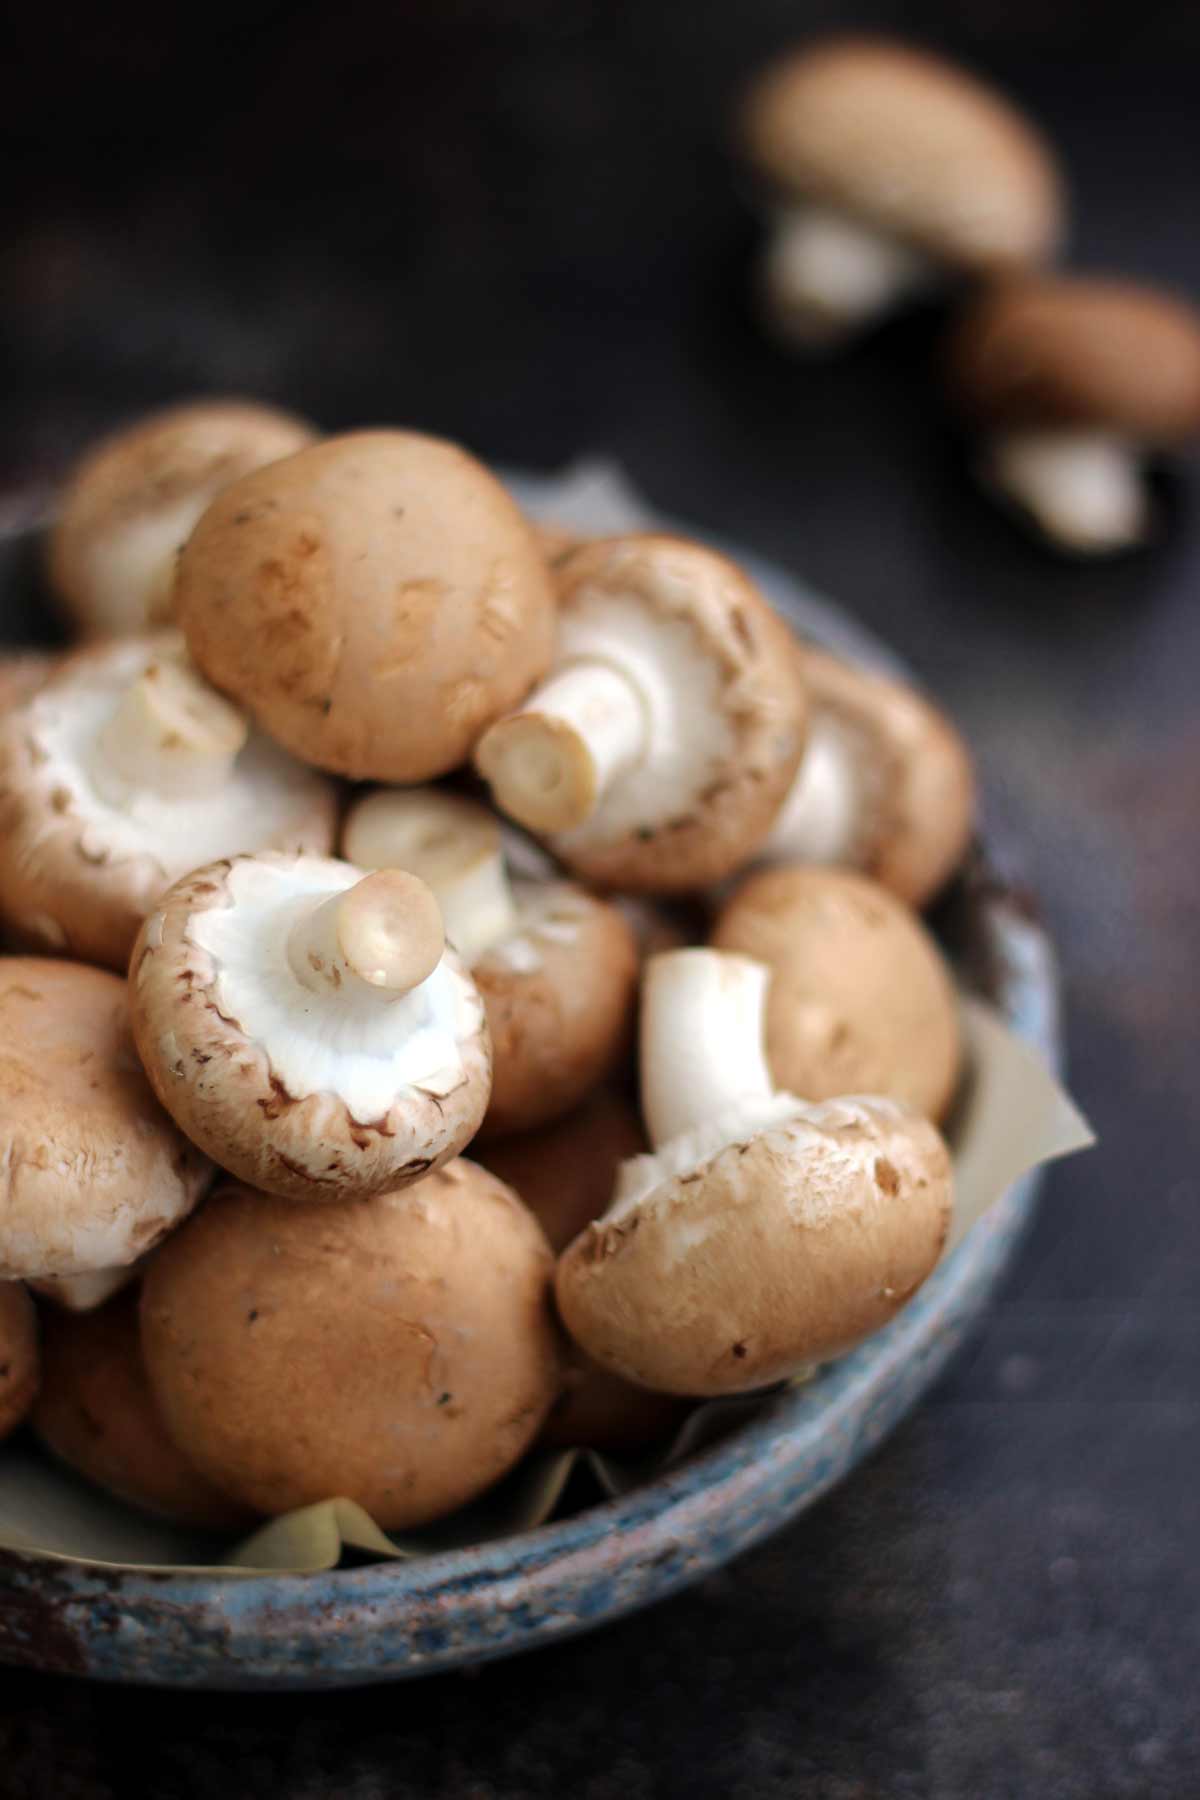 Crimini Mushrooms in a Grey Bowl